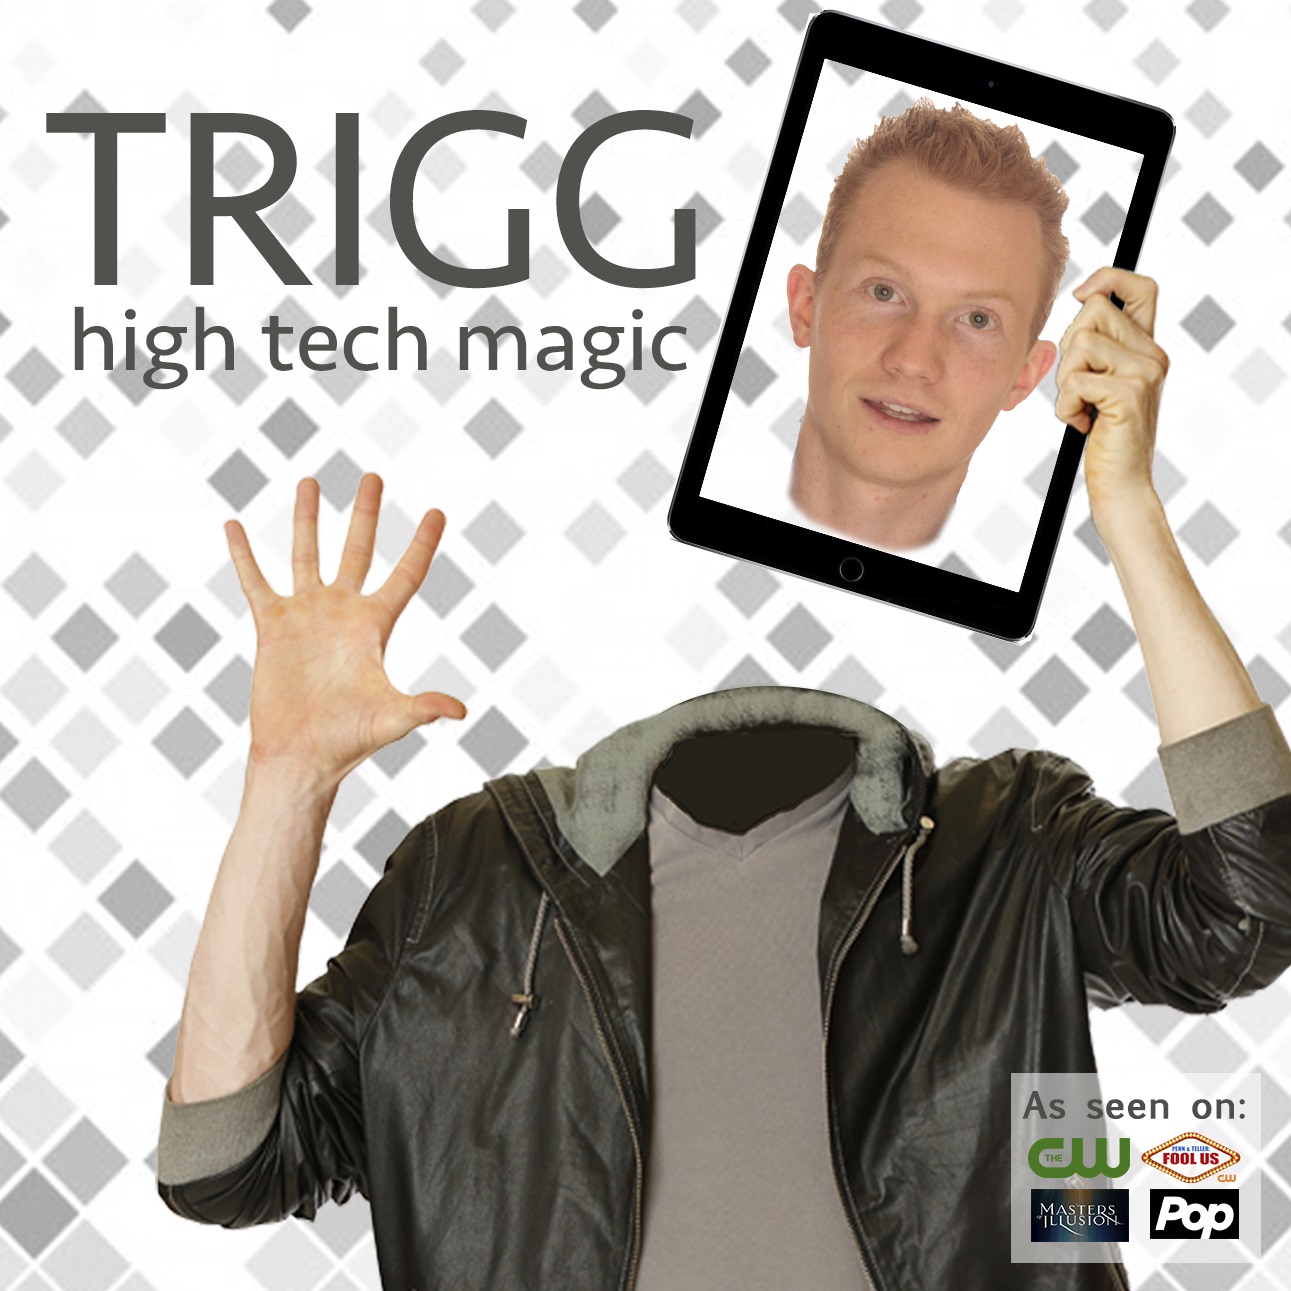 Trigg Watson high-tech magician